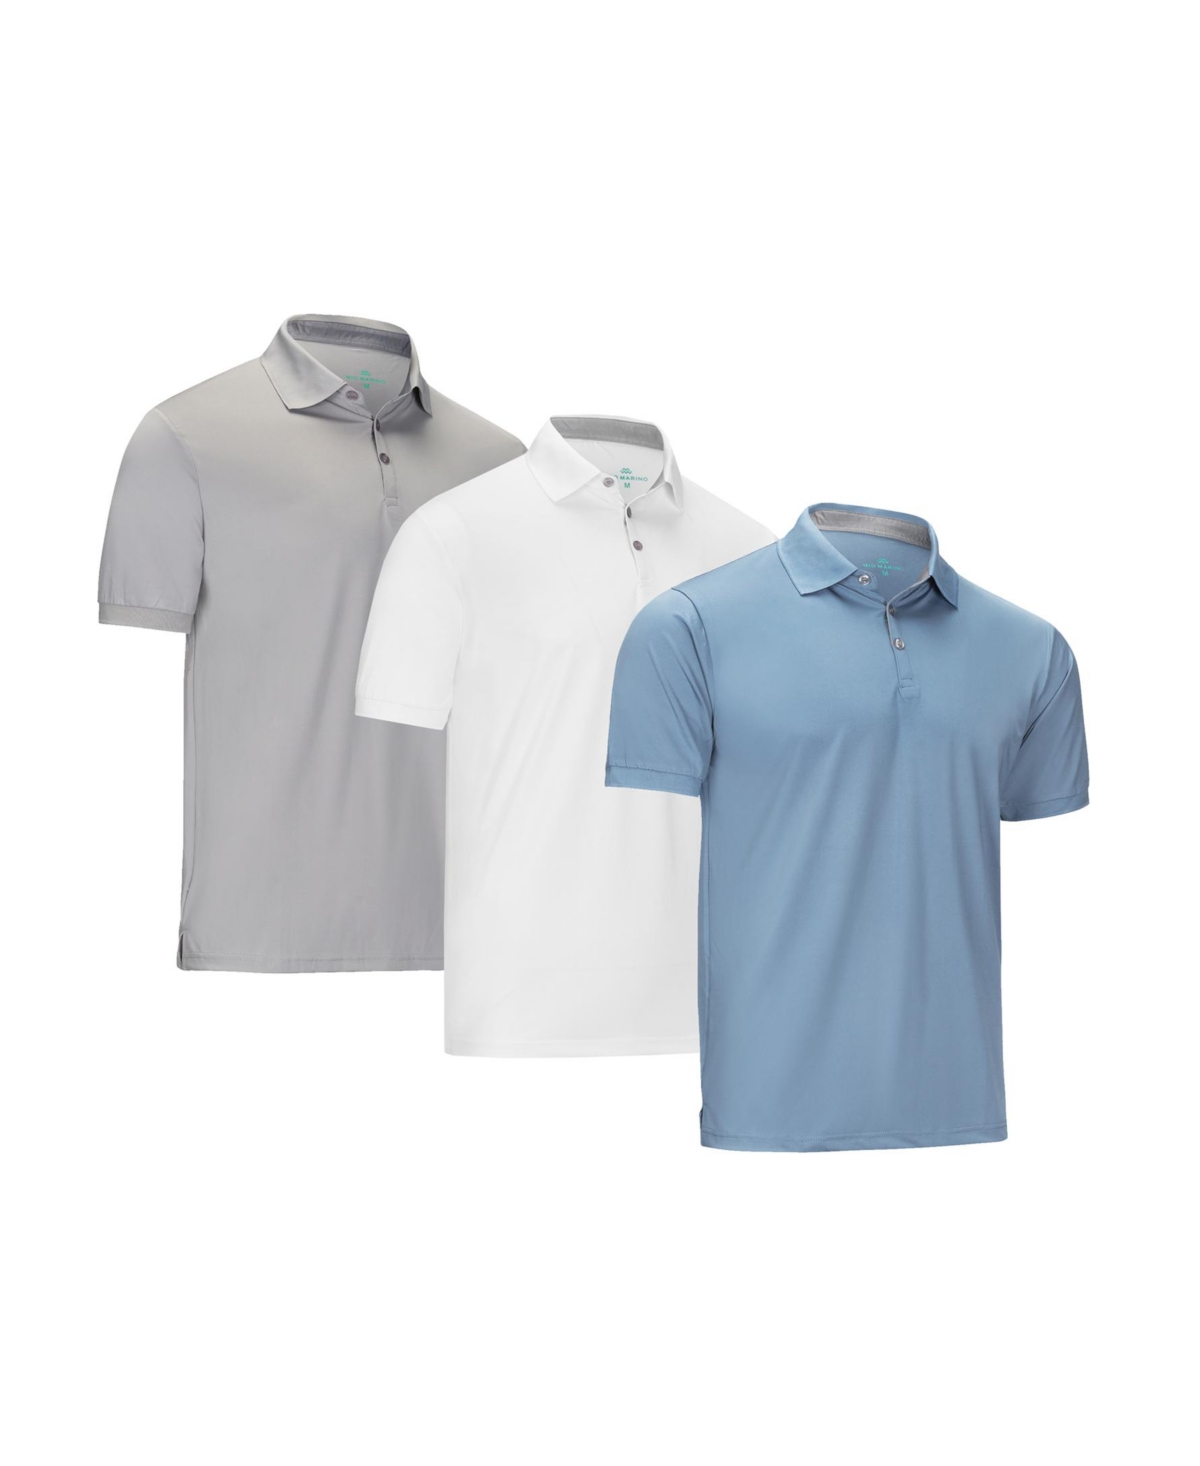 Men's Designer Golf Polo Shirt Plus Size - 3 Pack - Denim blue, gray, white